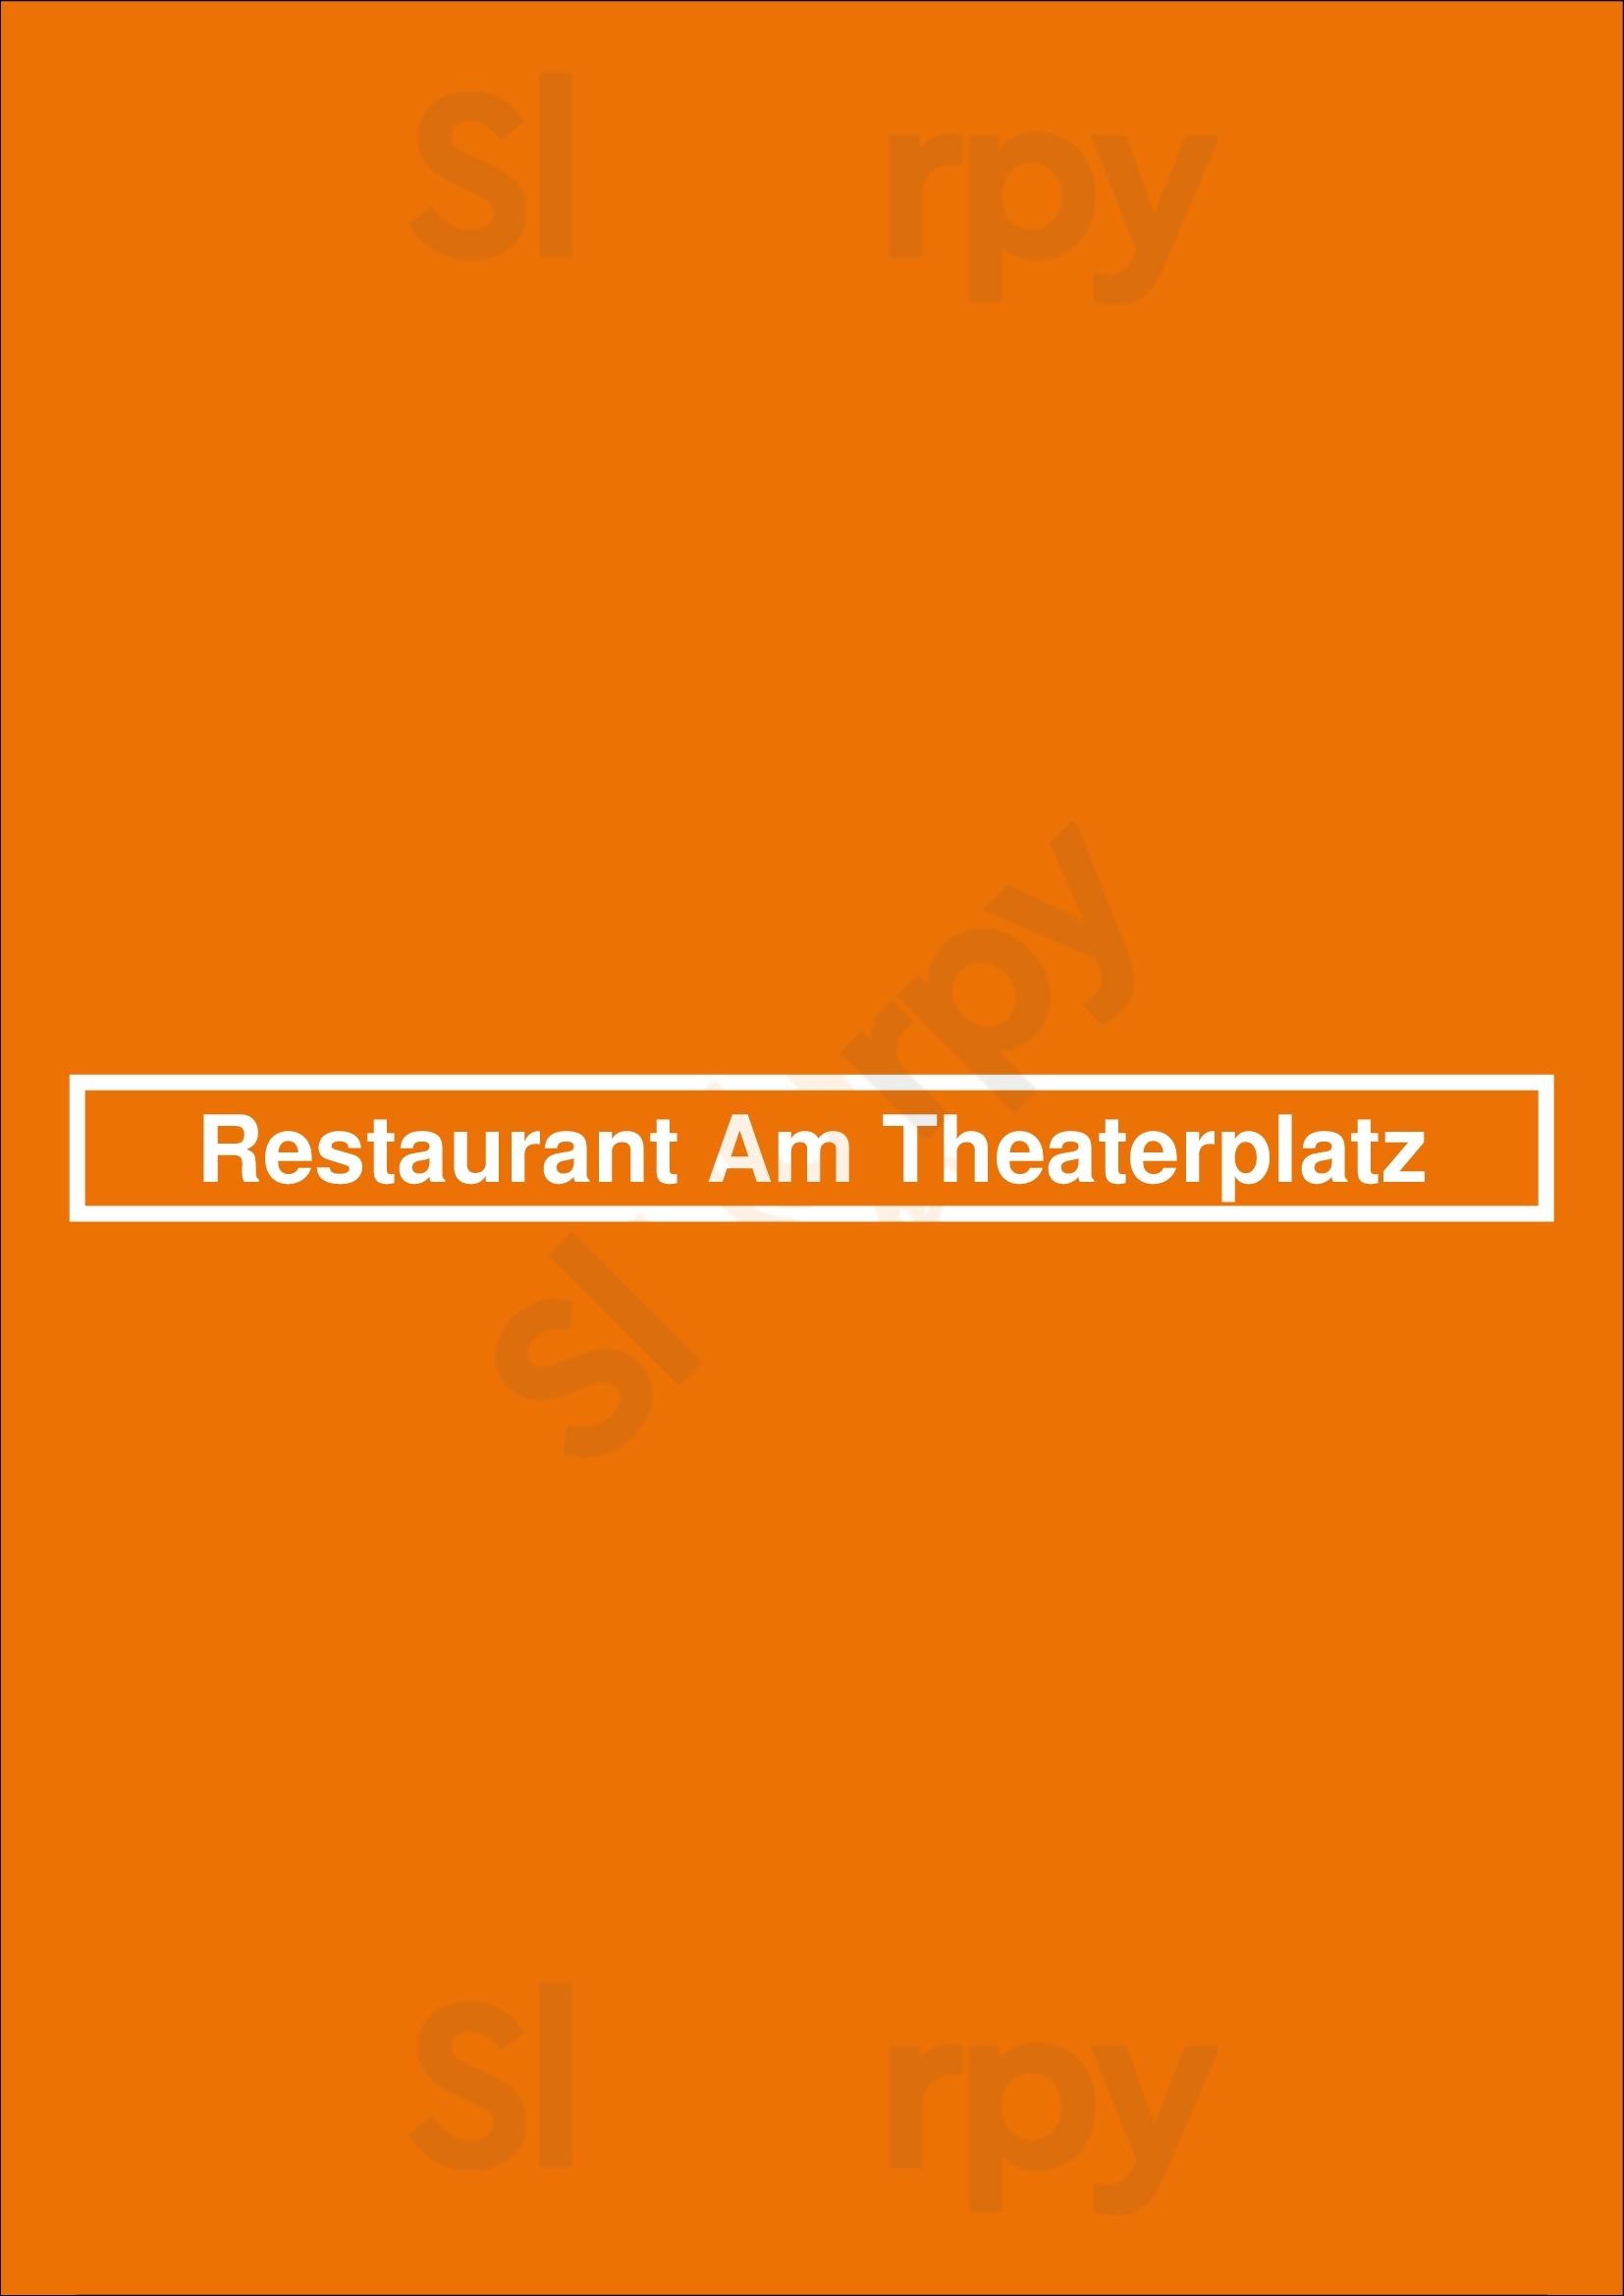 Restaurant Am Theaterplatz Bremerhaven Menu - 1